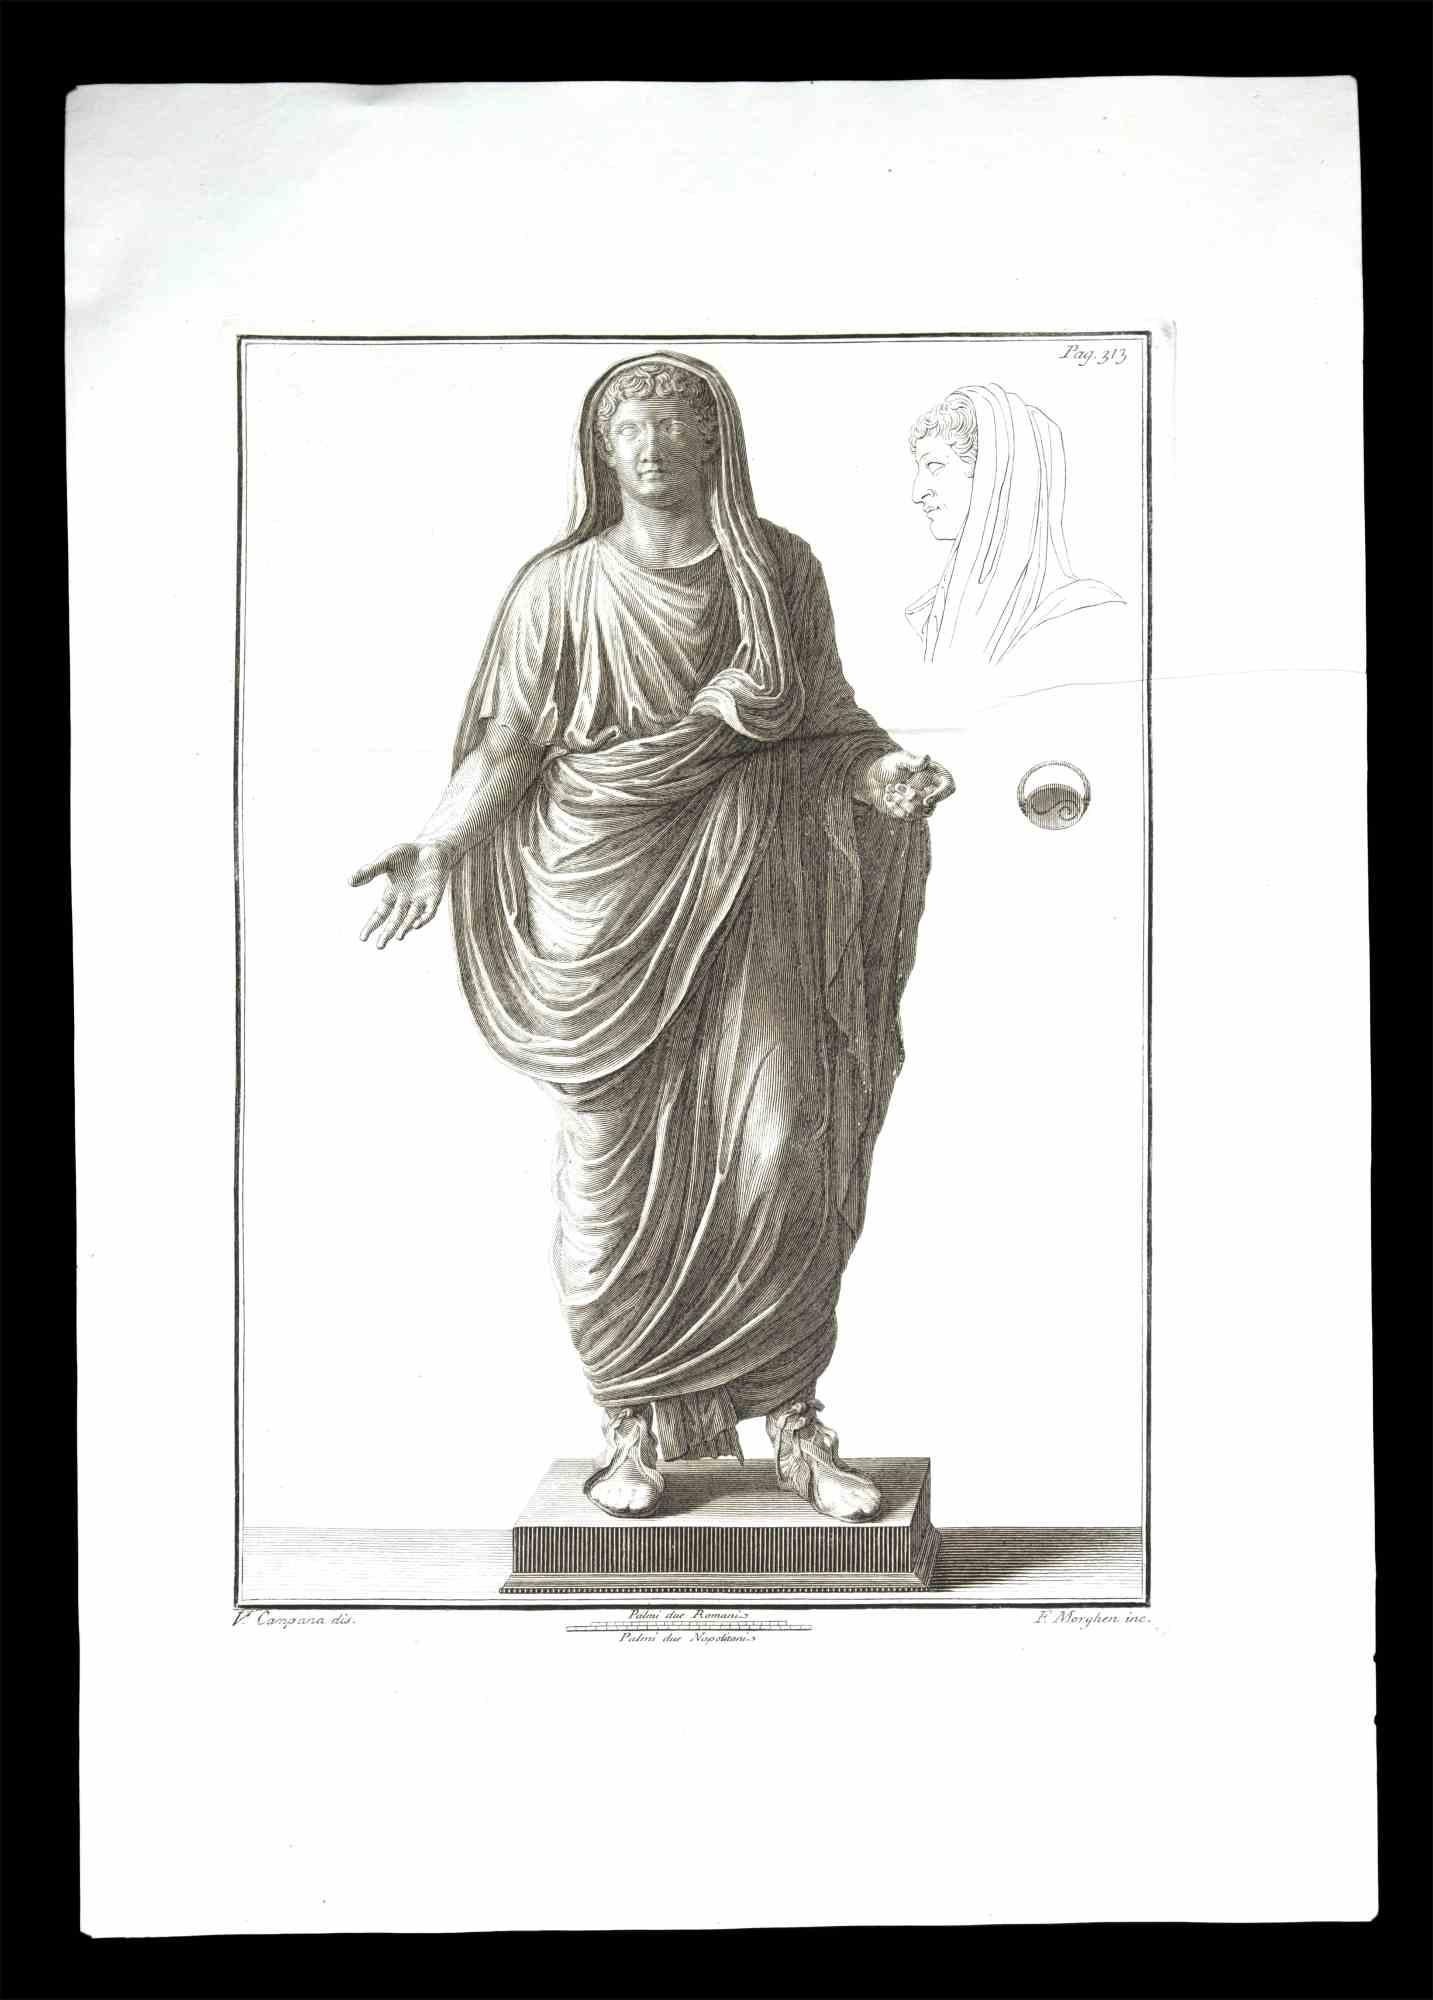 Antike römische Statue, aus der Serie "Antiquitäten von Herculaneum", ist eine Originalradierung auf Papier von Filippo Morghen aus dem 18.

Signiert auf der Platte, unten rechts.

Gute Bedingungen.

Die Radierung gehört zu der Druckserie